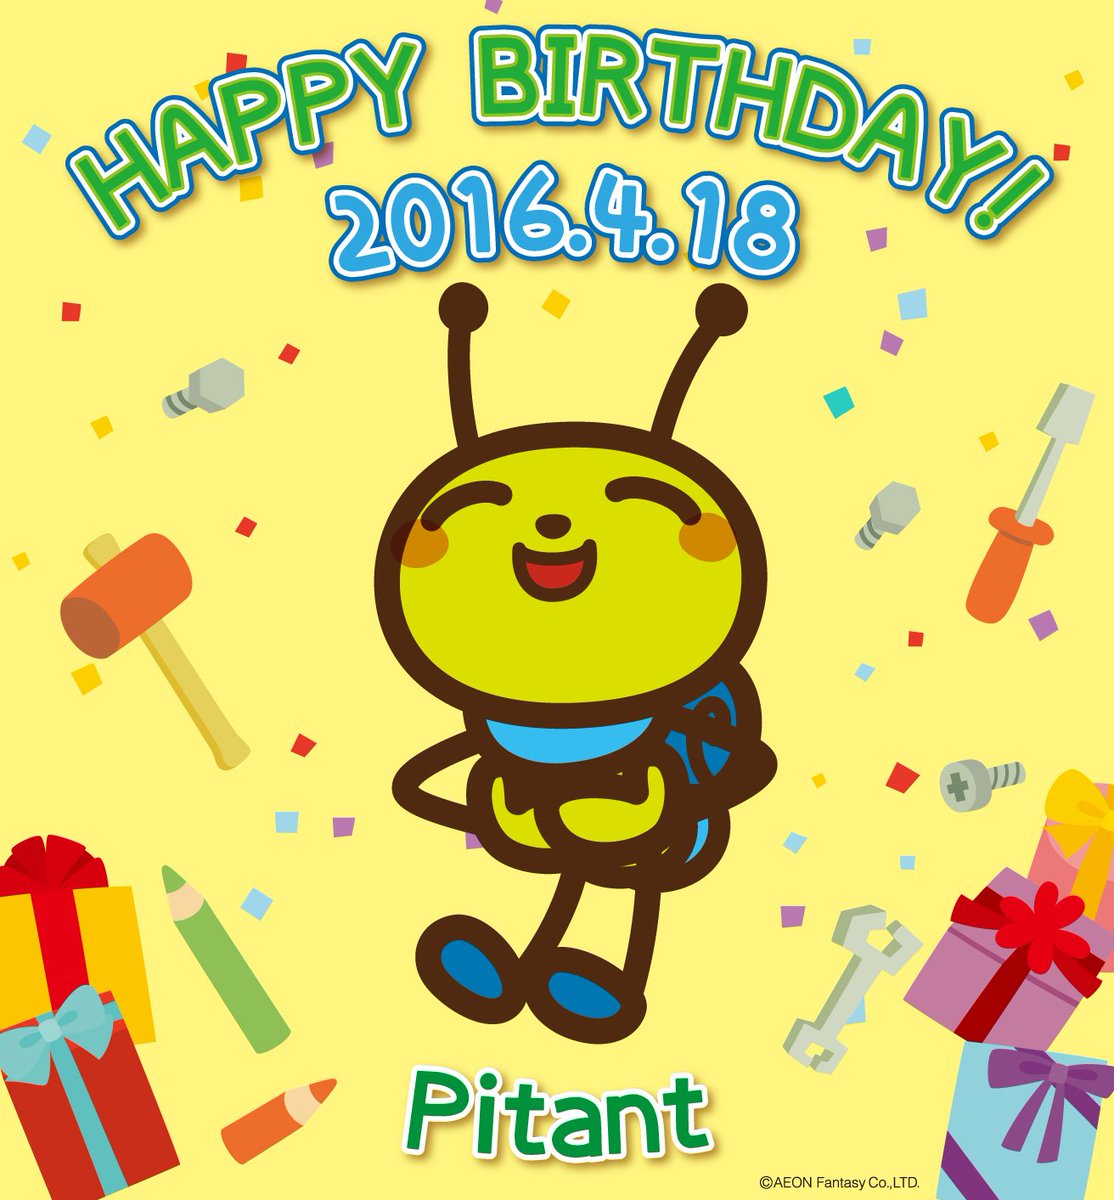 モーリーファンタジー 公式 おたんじょうびおめでとう 今日４月１８日はモーリーファンタジーのピュータンのお誕生日です ものづくりが得意なカタツムリの男の子です